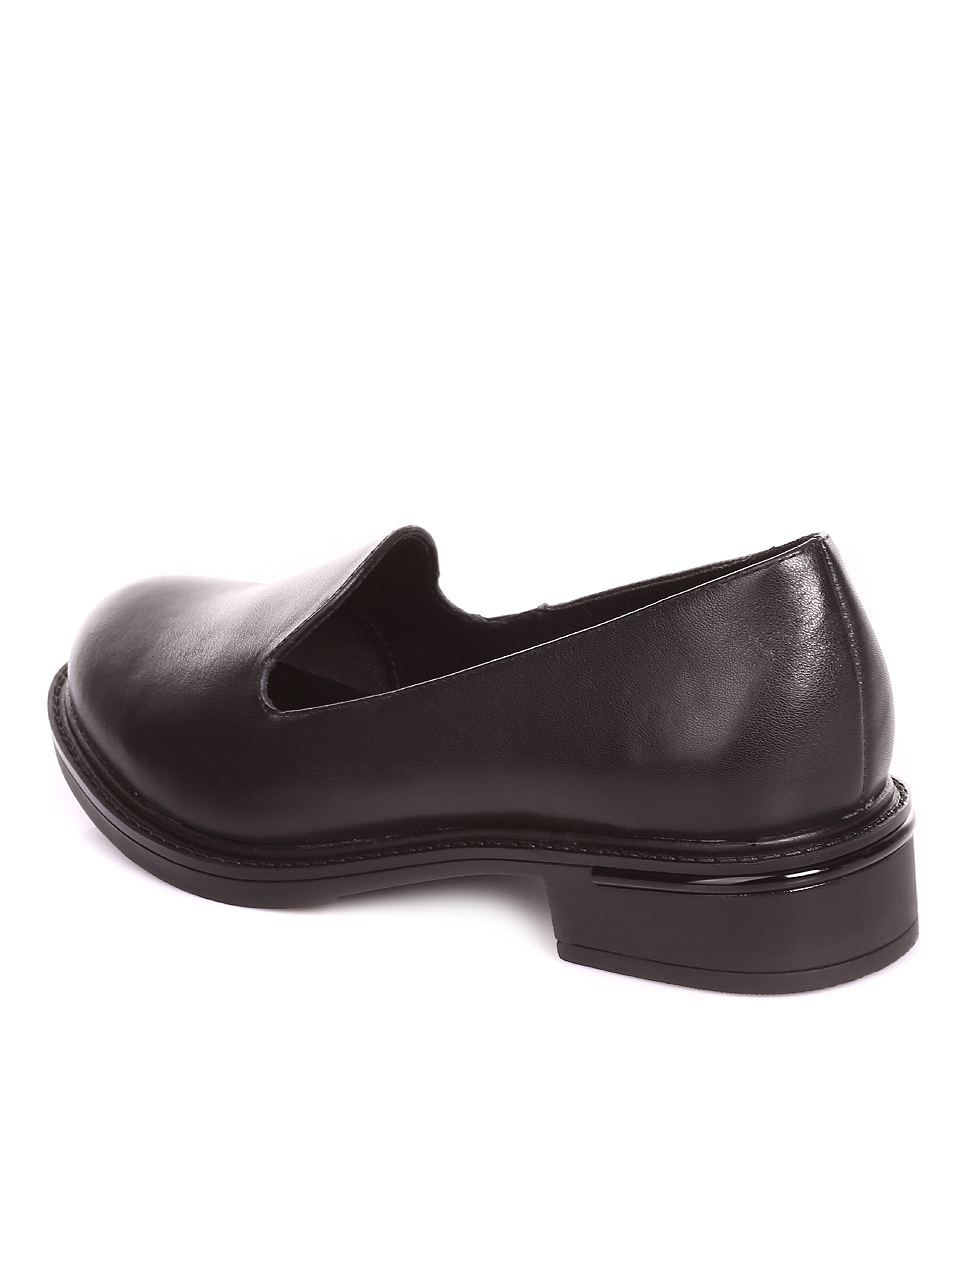 Ежедневни дамски обувки от естествена кожа в черно 3AF-20211 black